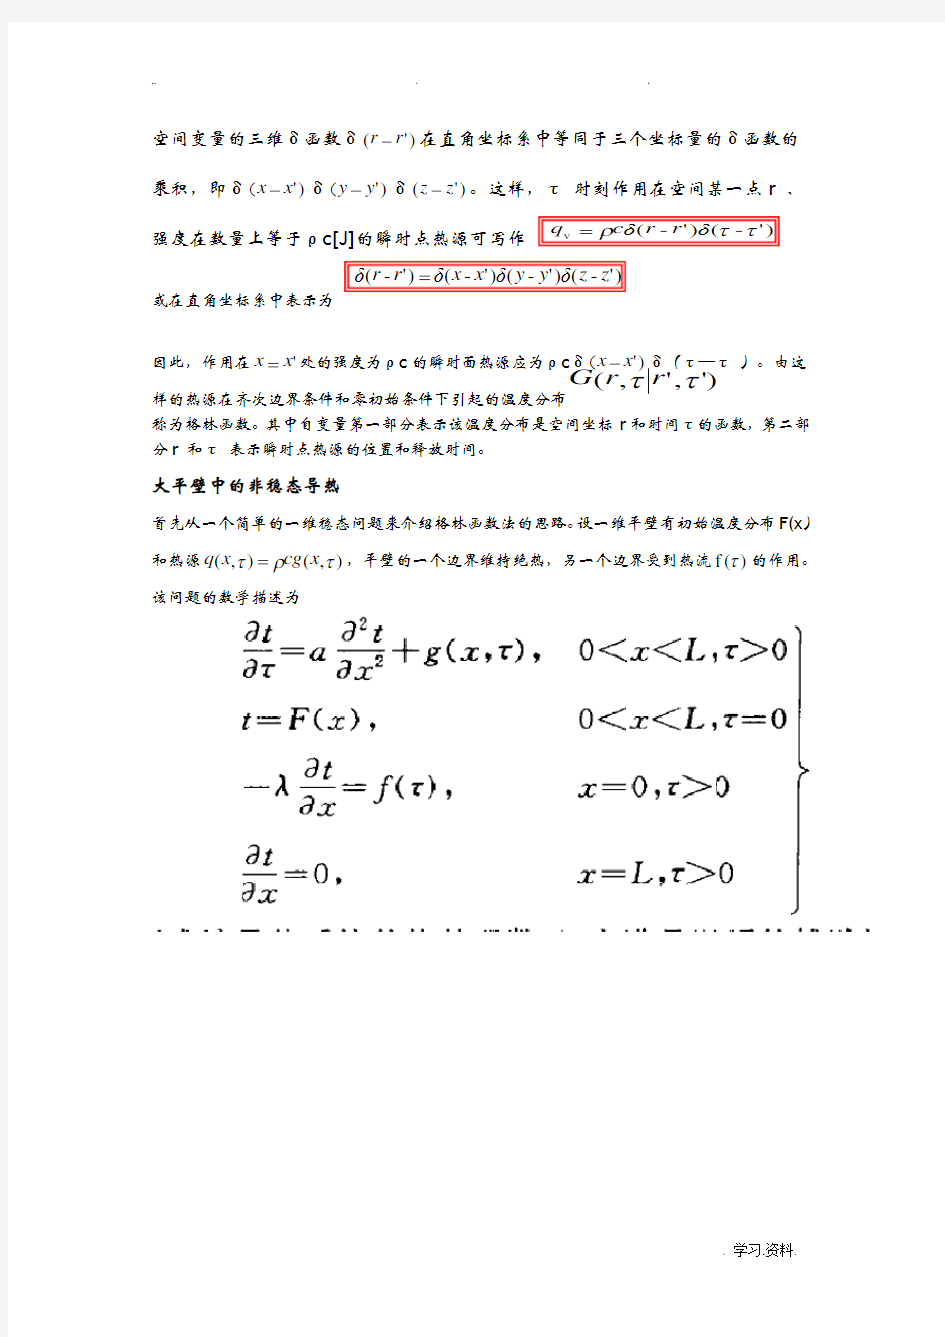 格林函数以及拉普拉斯方程